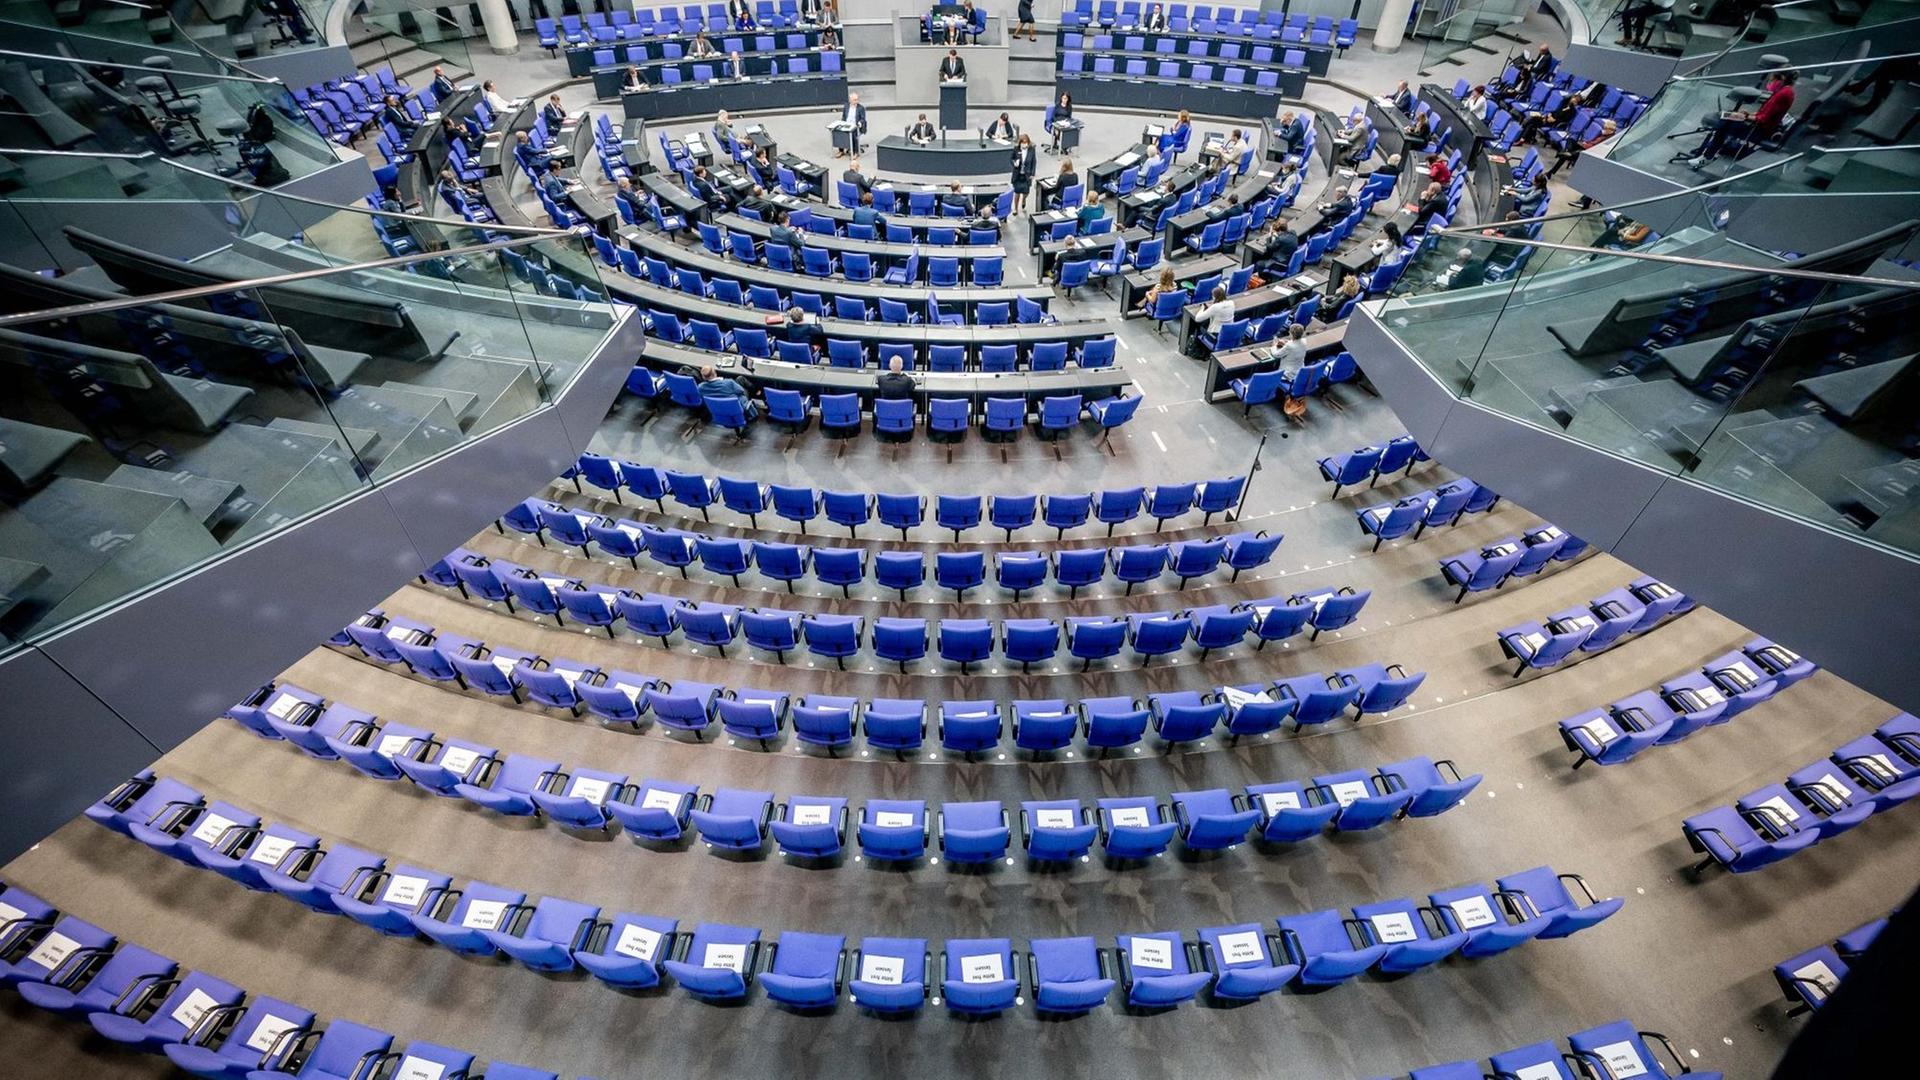 Stühle für die Abgeordneten, aufgenommen im Plenum in Deutschen Bundestag. Auf einigen der Stühle liegen Zettel mit der Aufschrift "Bitte frei lassen".